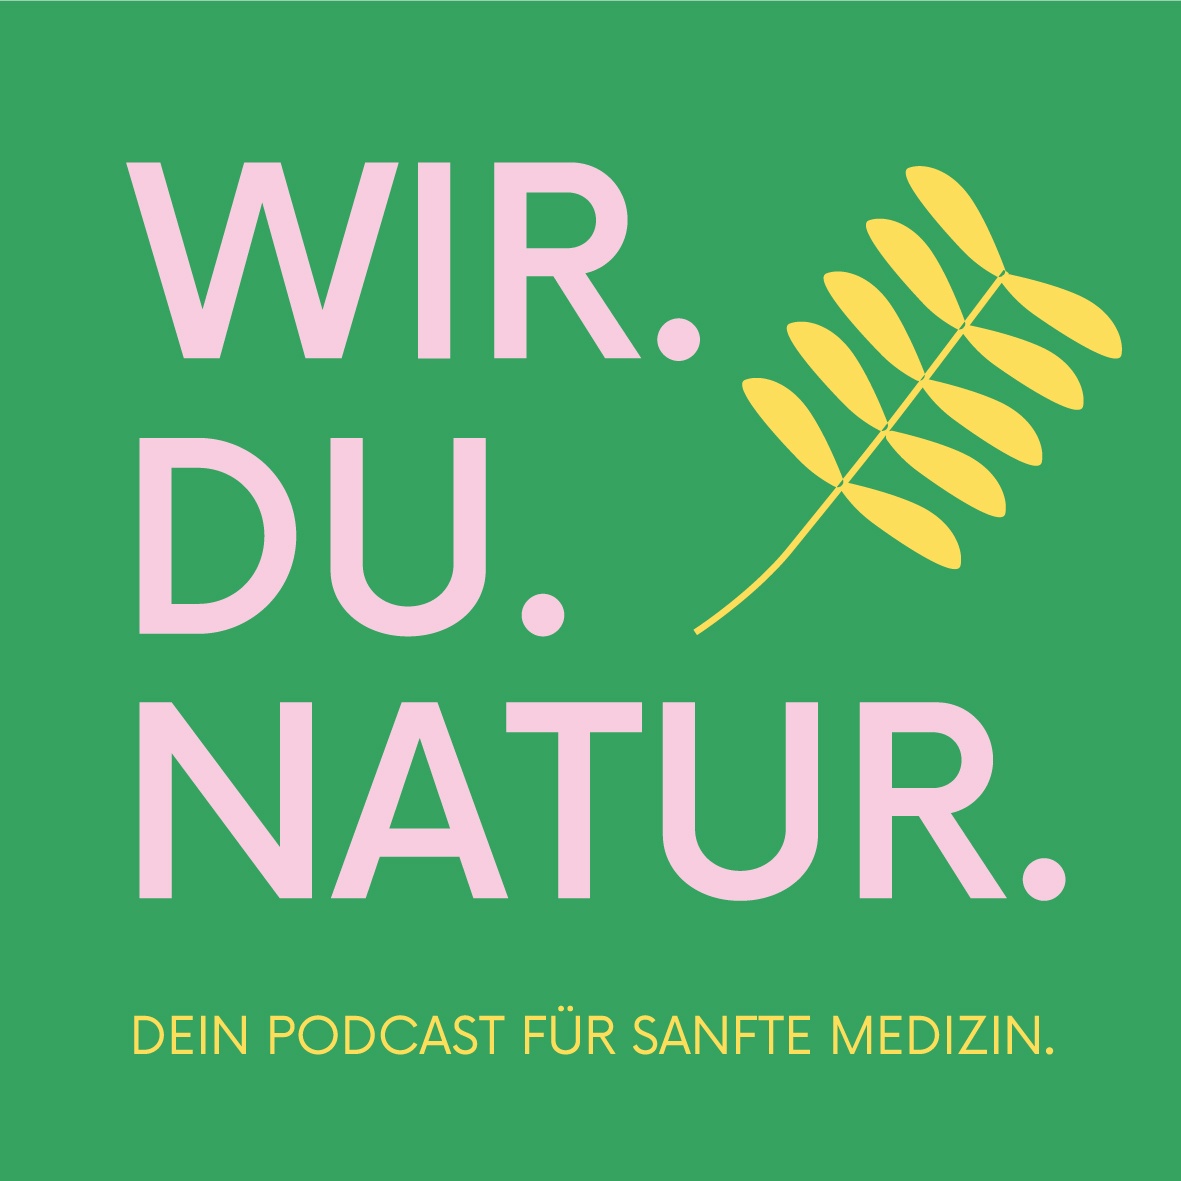 #134 Coprinus Comatus: Auf den Spuren des Schopftintlings – Ein Pilz macht Karriere in der Naturmedizin